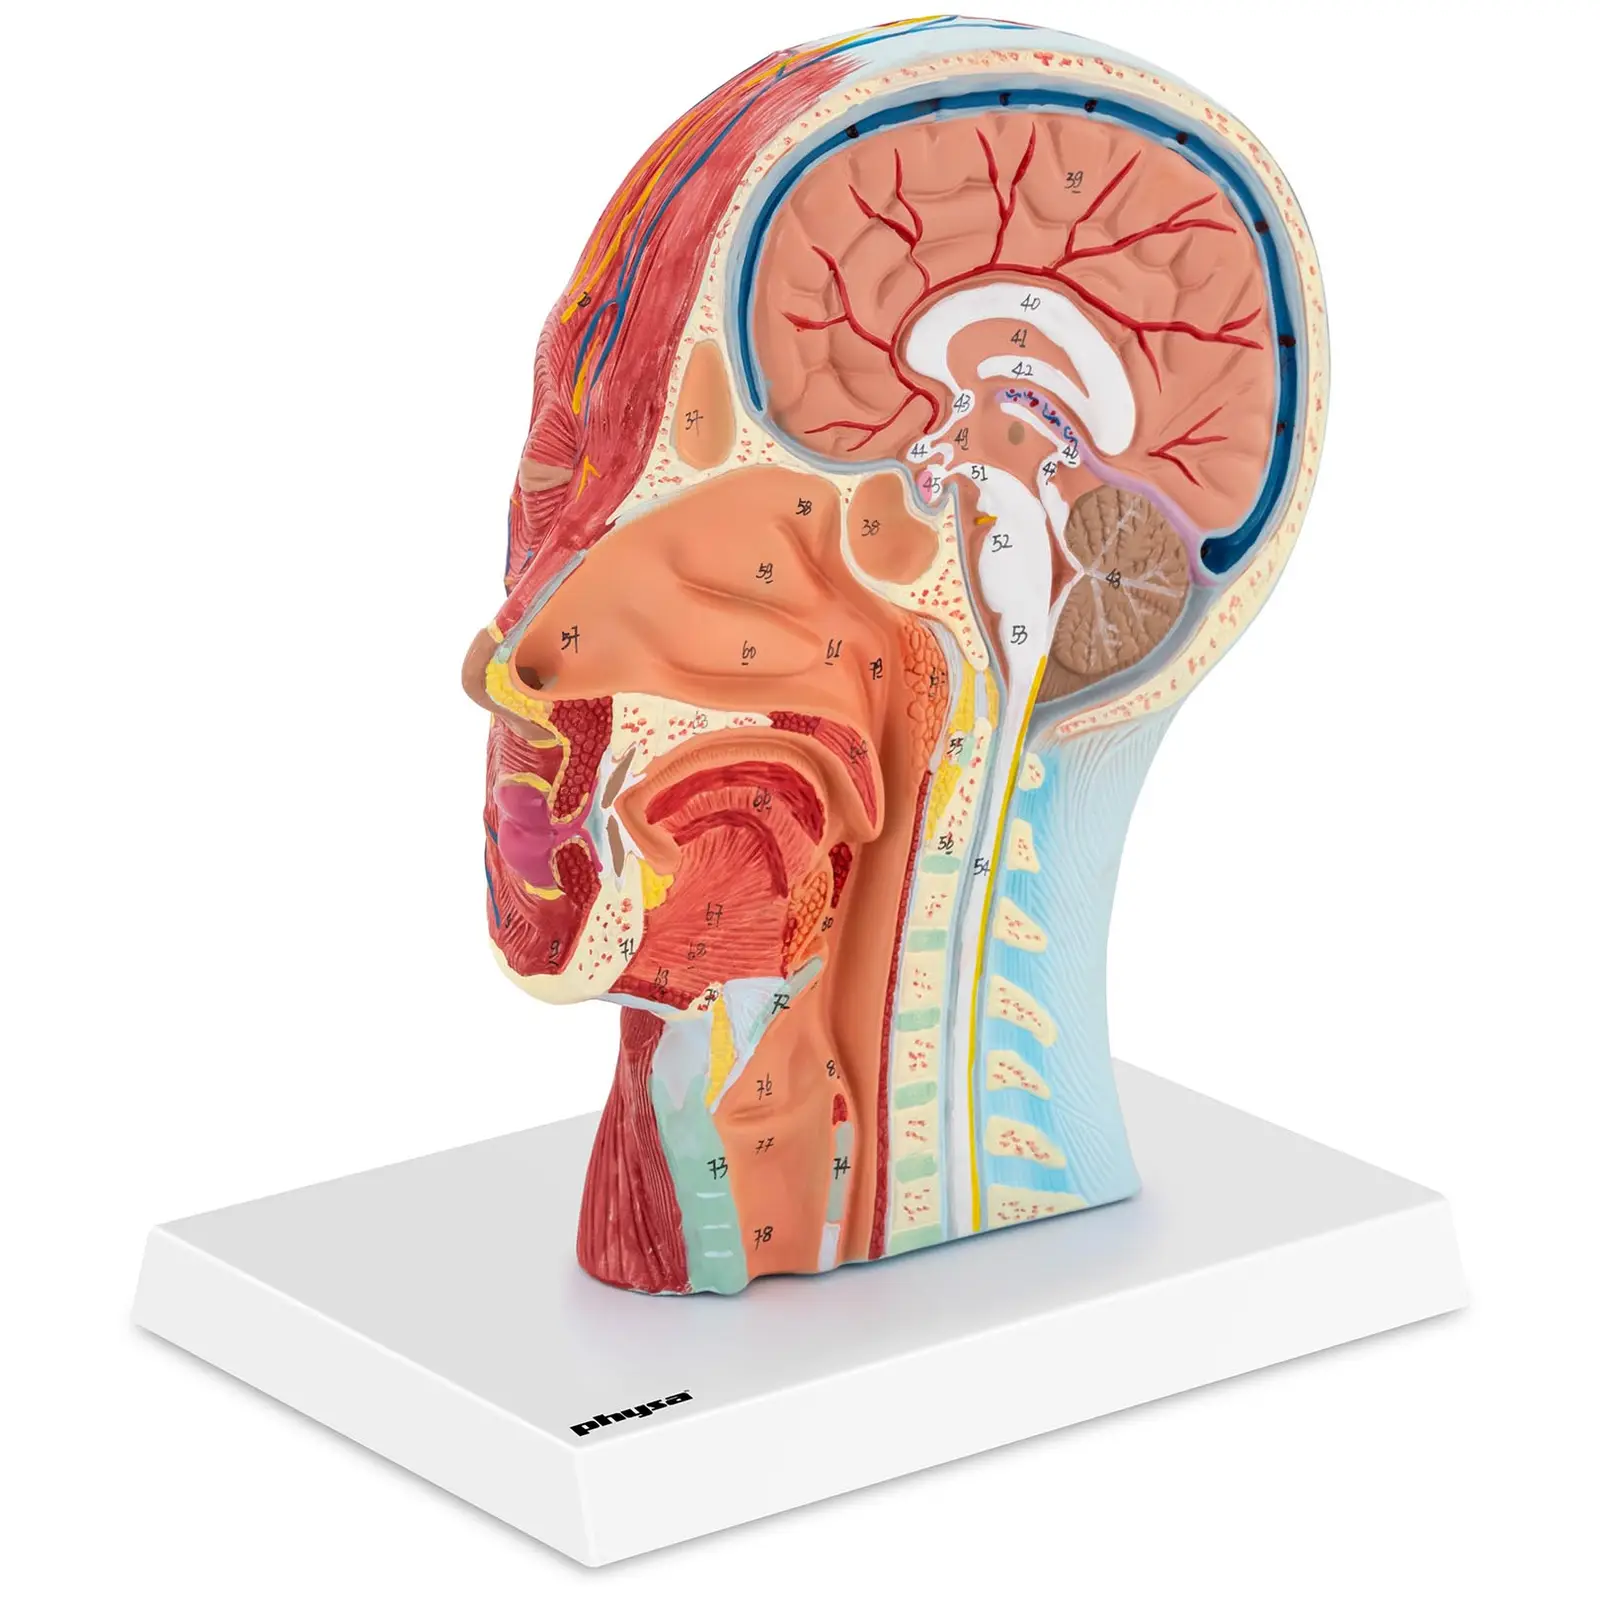 Anatomisk hodeskalle - Mediant snitt - Naturlig størrelse